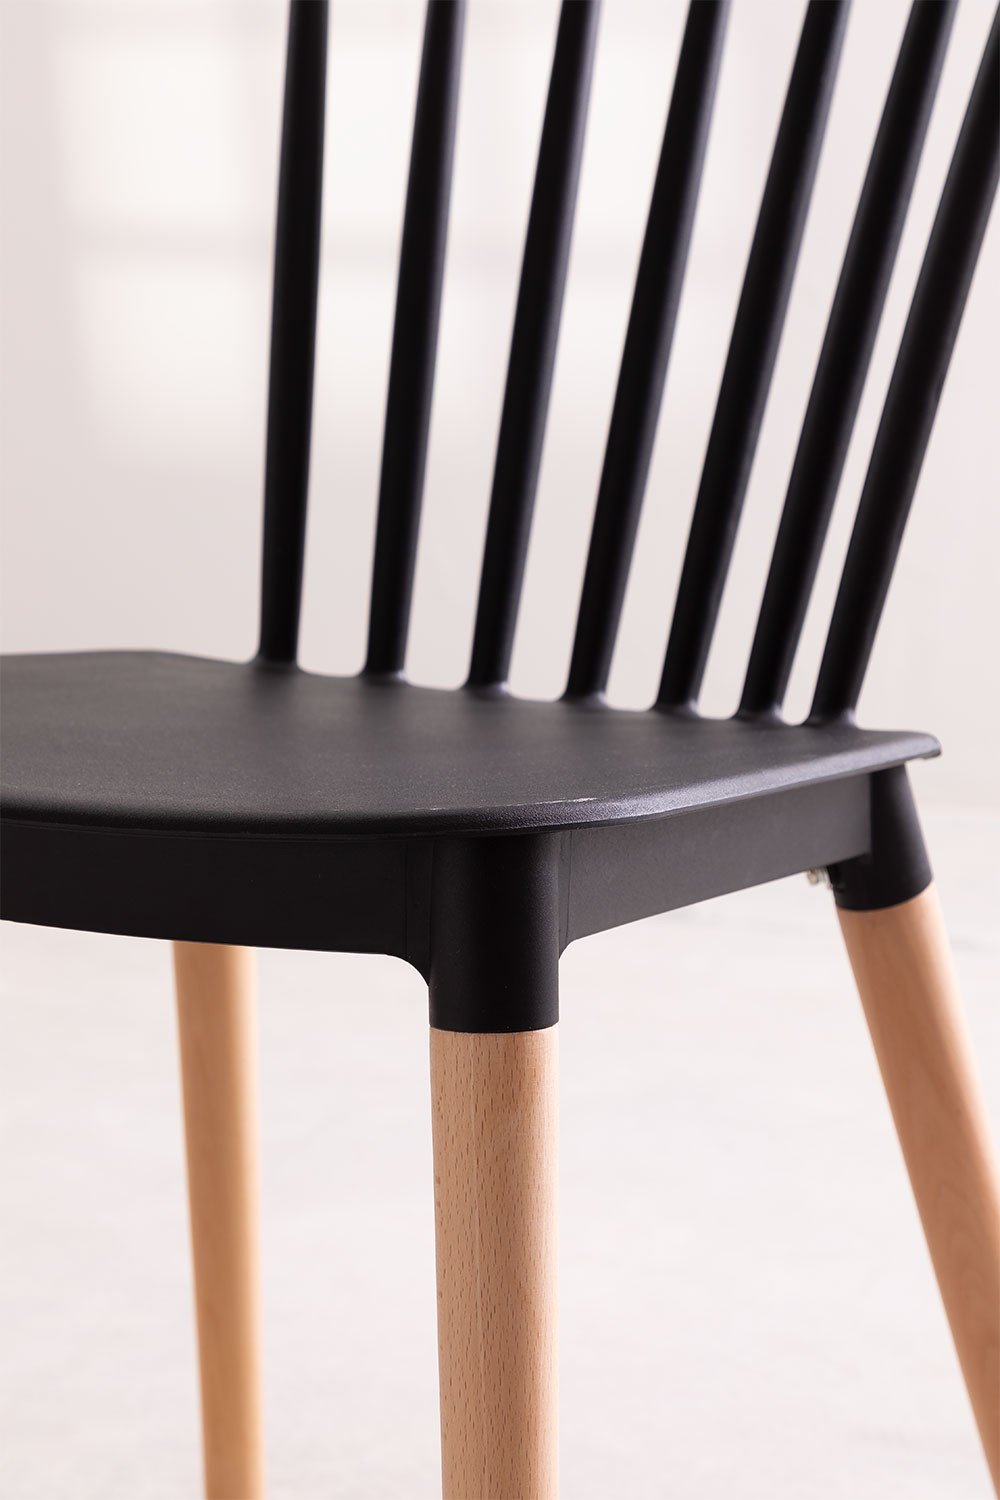 Chaise style scandinave à barreaux modèle POP - Coque en résine noire et pieds en bois naturel